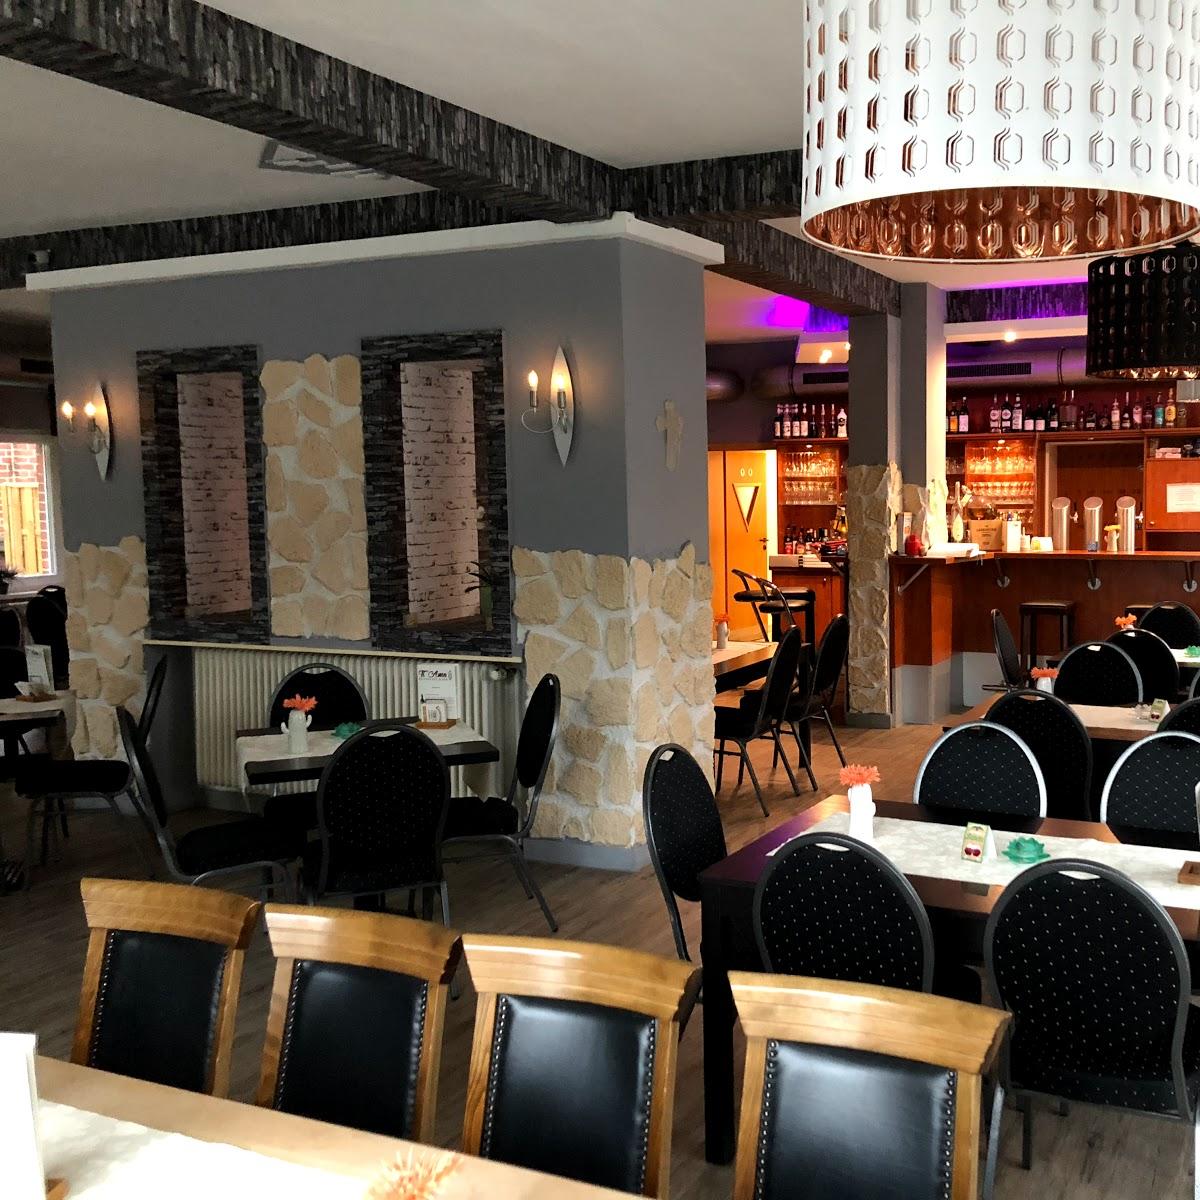 Restaurant "TiAmo - Restaurant & Bar - Pizza & Mehr In" in Saerbeck